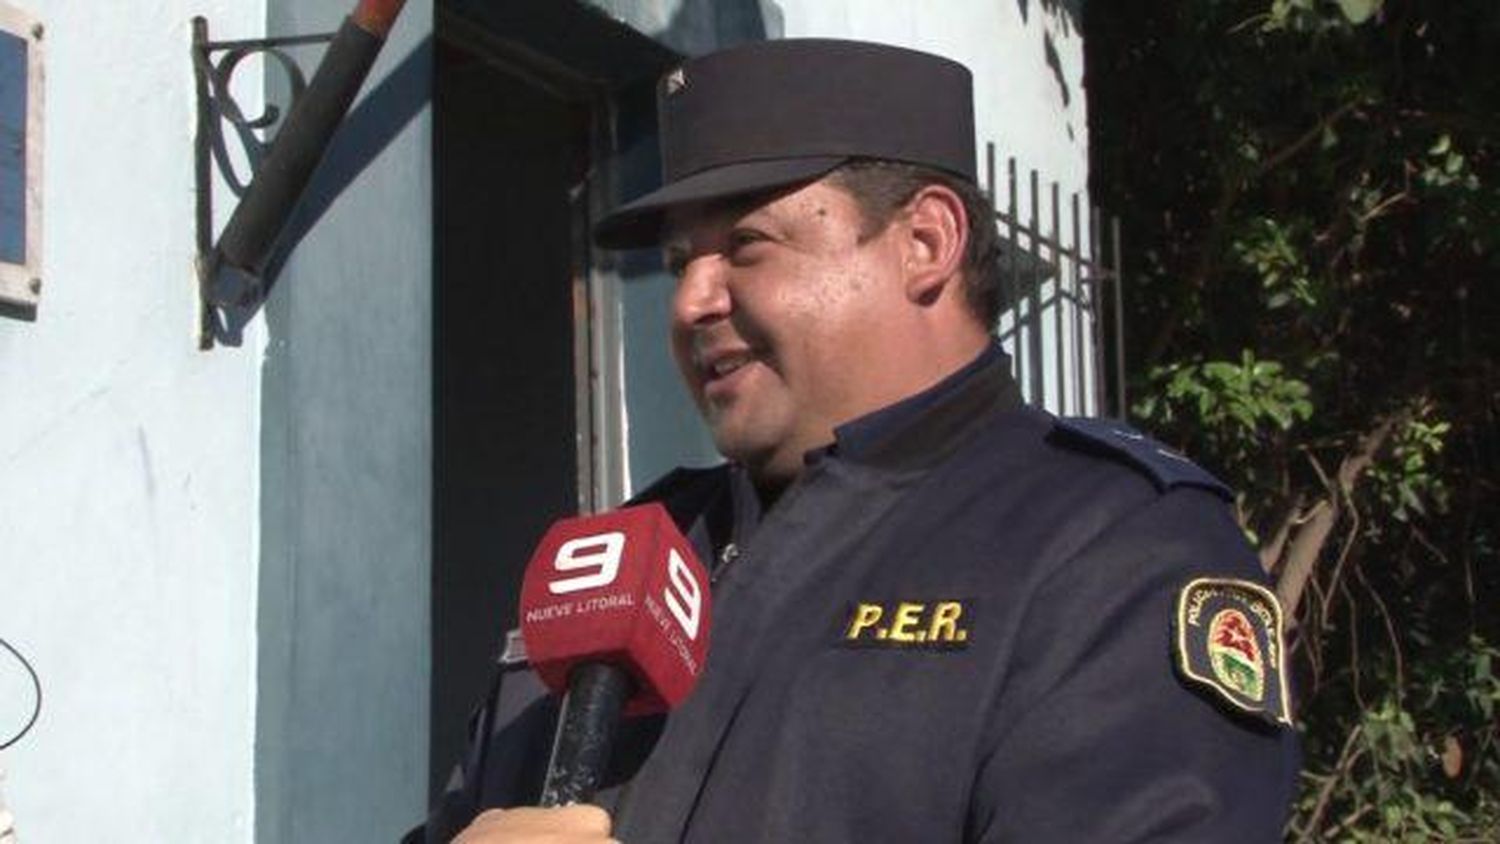 UN ACTO VALIENTE DE UN POLICÍA
HIJO DE GENERAL GALARZA. . .
